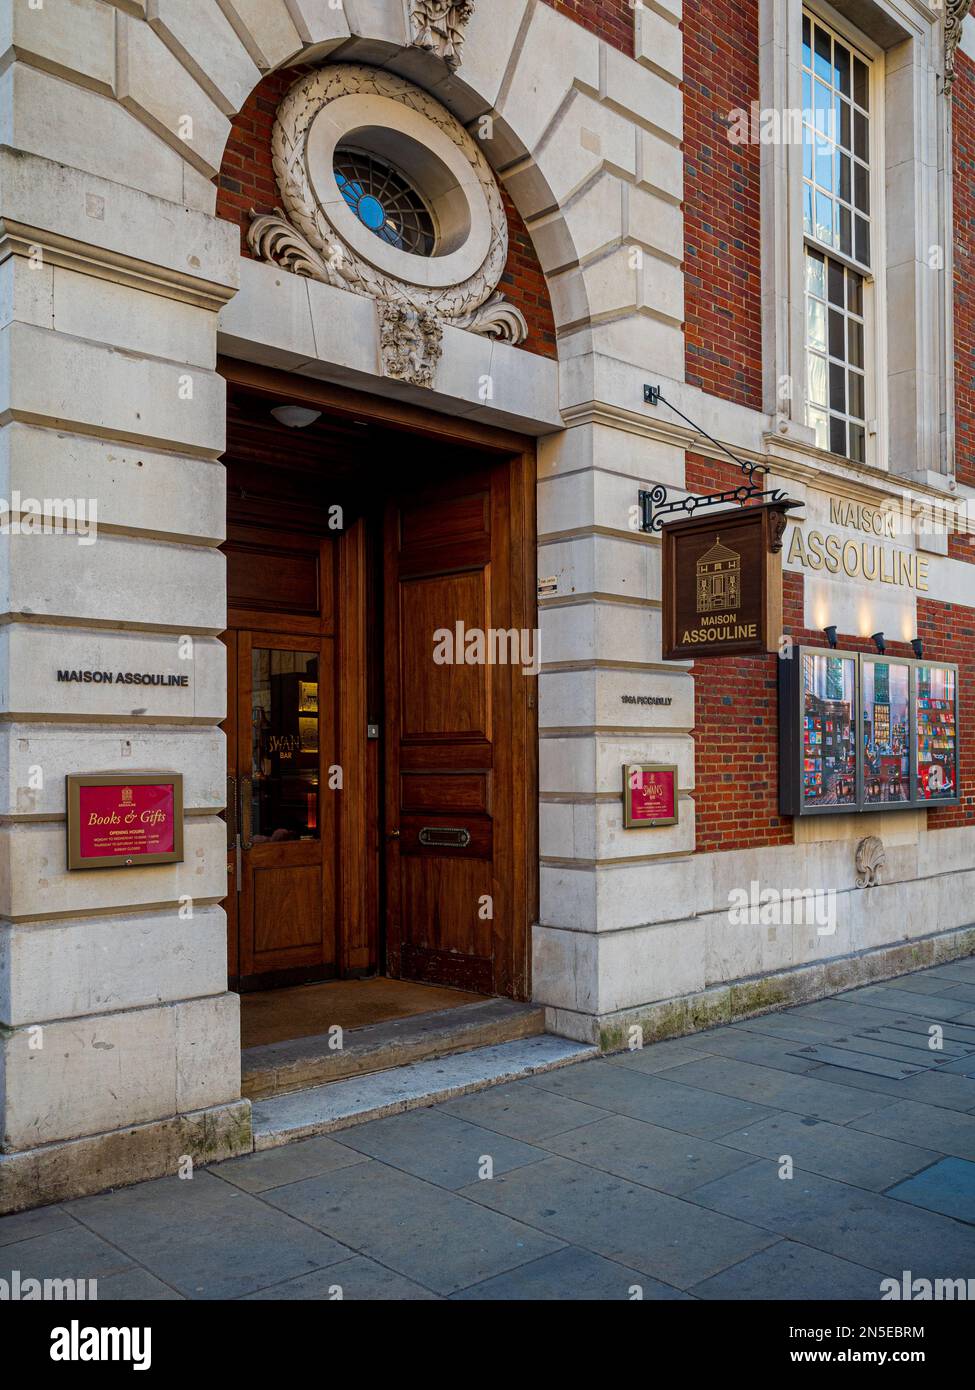 Maison Assouline Londres tienda insignia internacional en 196A Piccadilly, Londres. Descrita como una tienda conceptual para la cultura, la tienda abrió sus puertas en 2014. Foto de stock